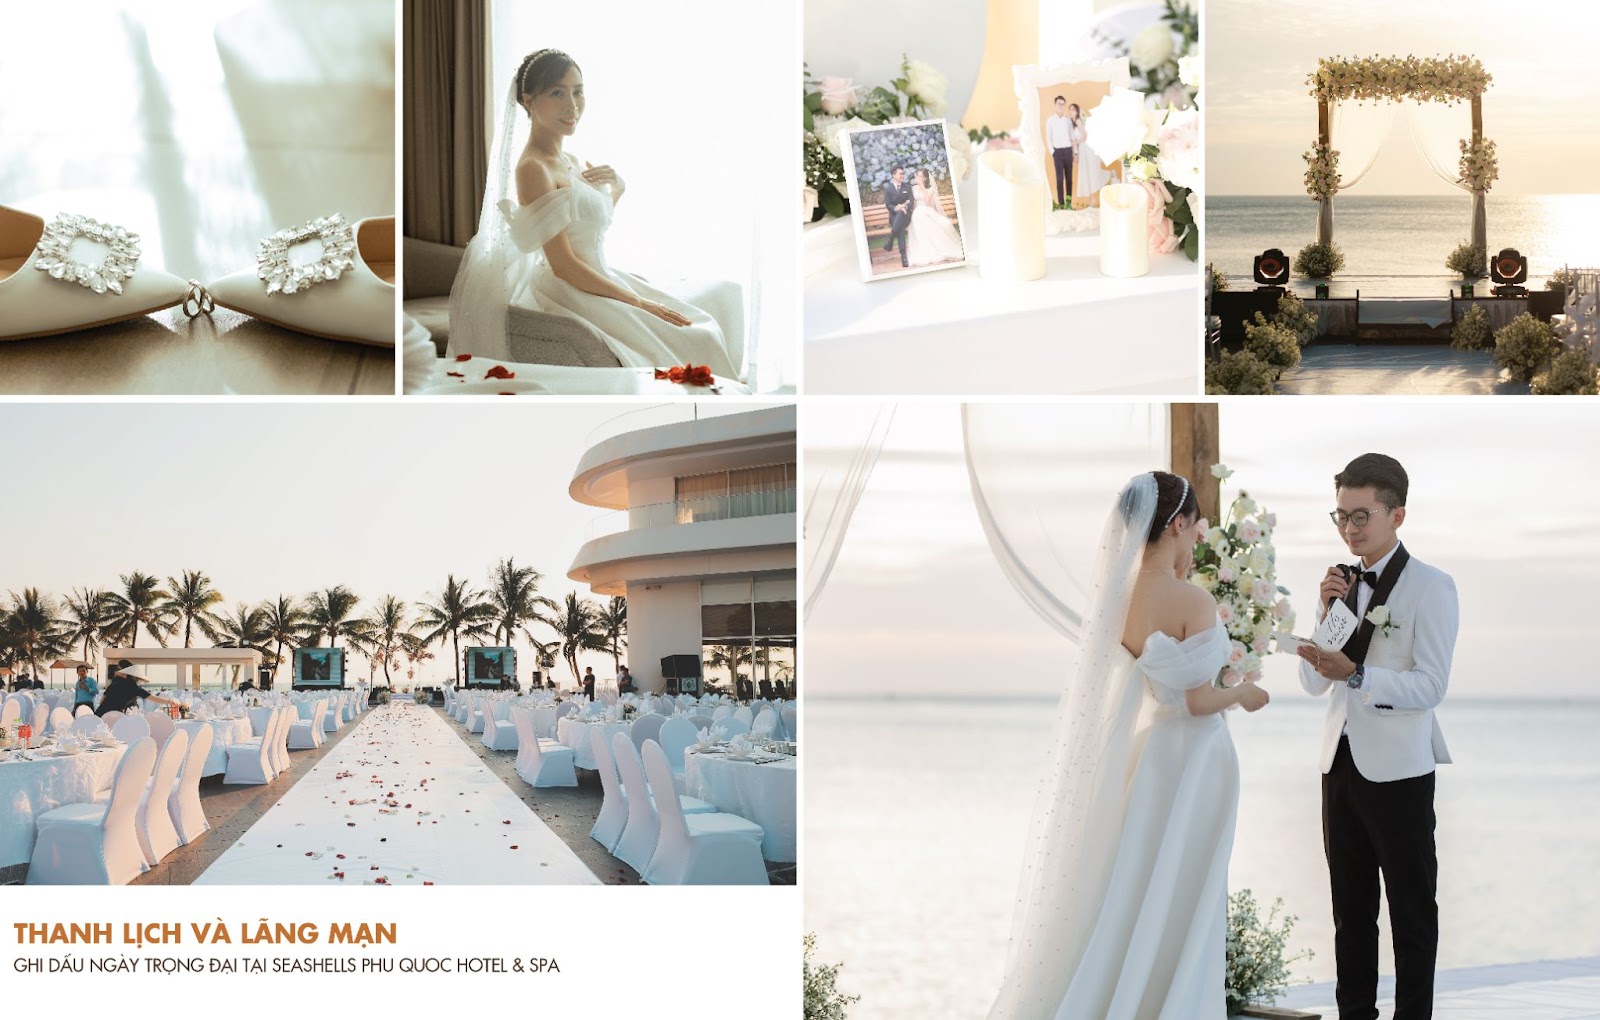 Seashells Phu Quoc Hotel & Spa - Lựa chọn hàng đầu cho lễ cưới kết hợp nghỉ dưỡng tại Phú Quốc